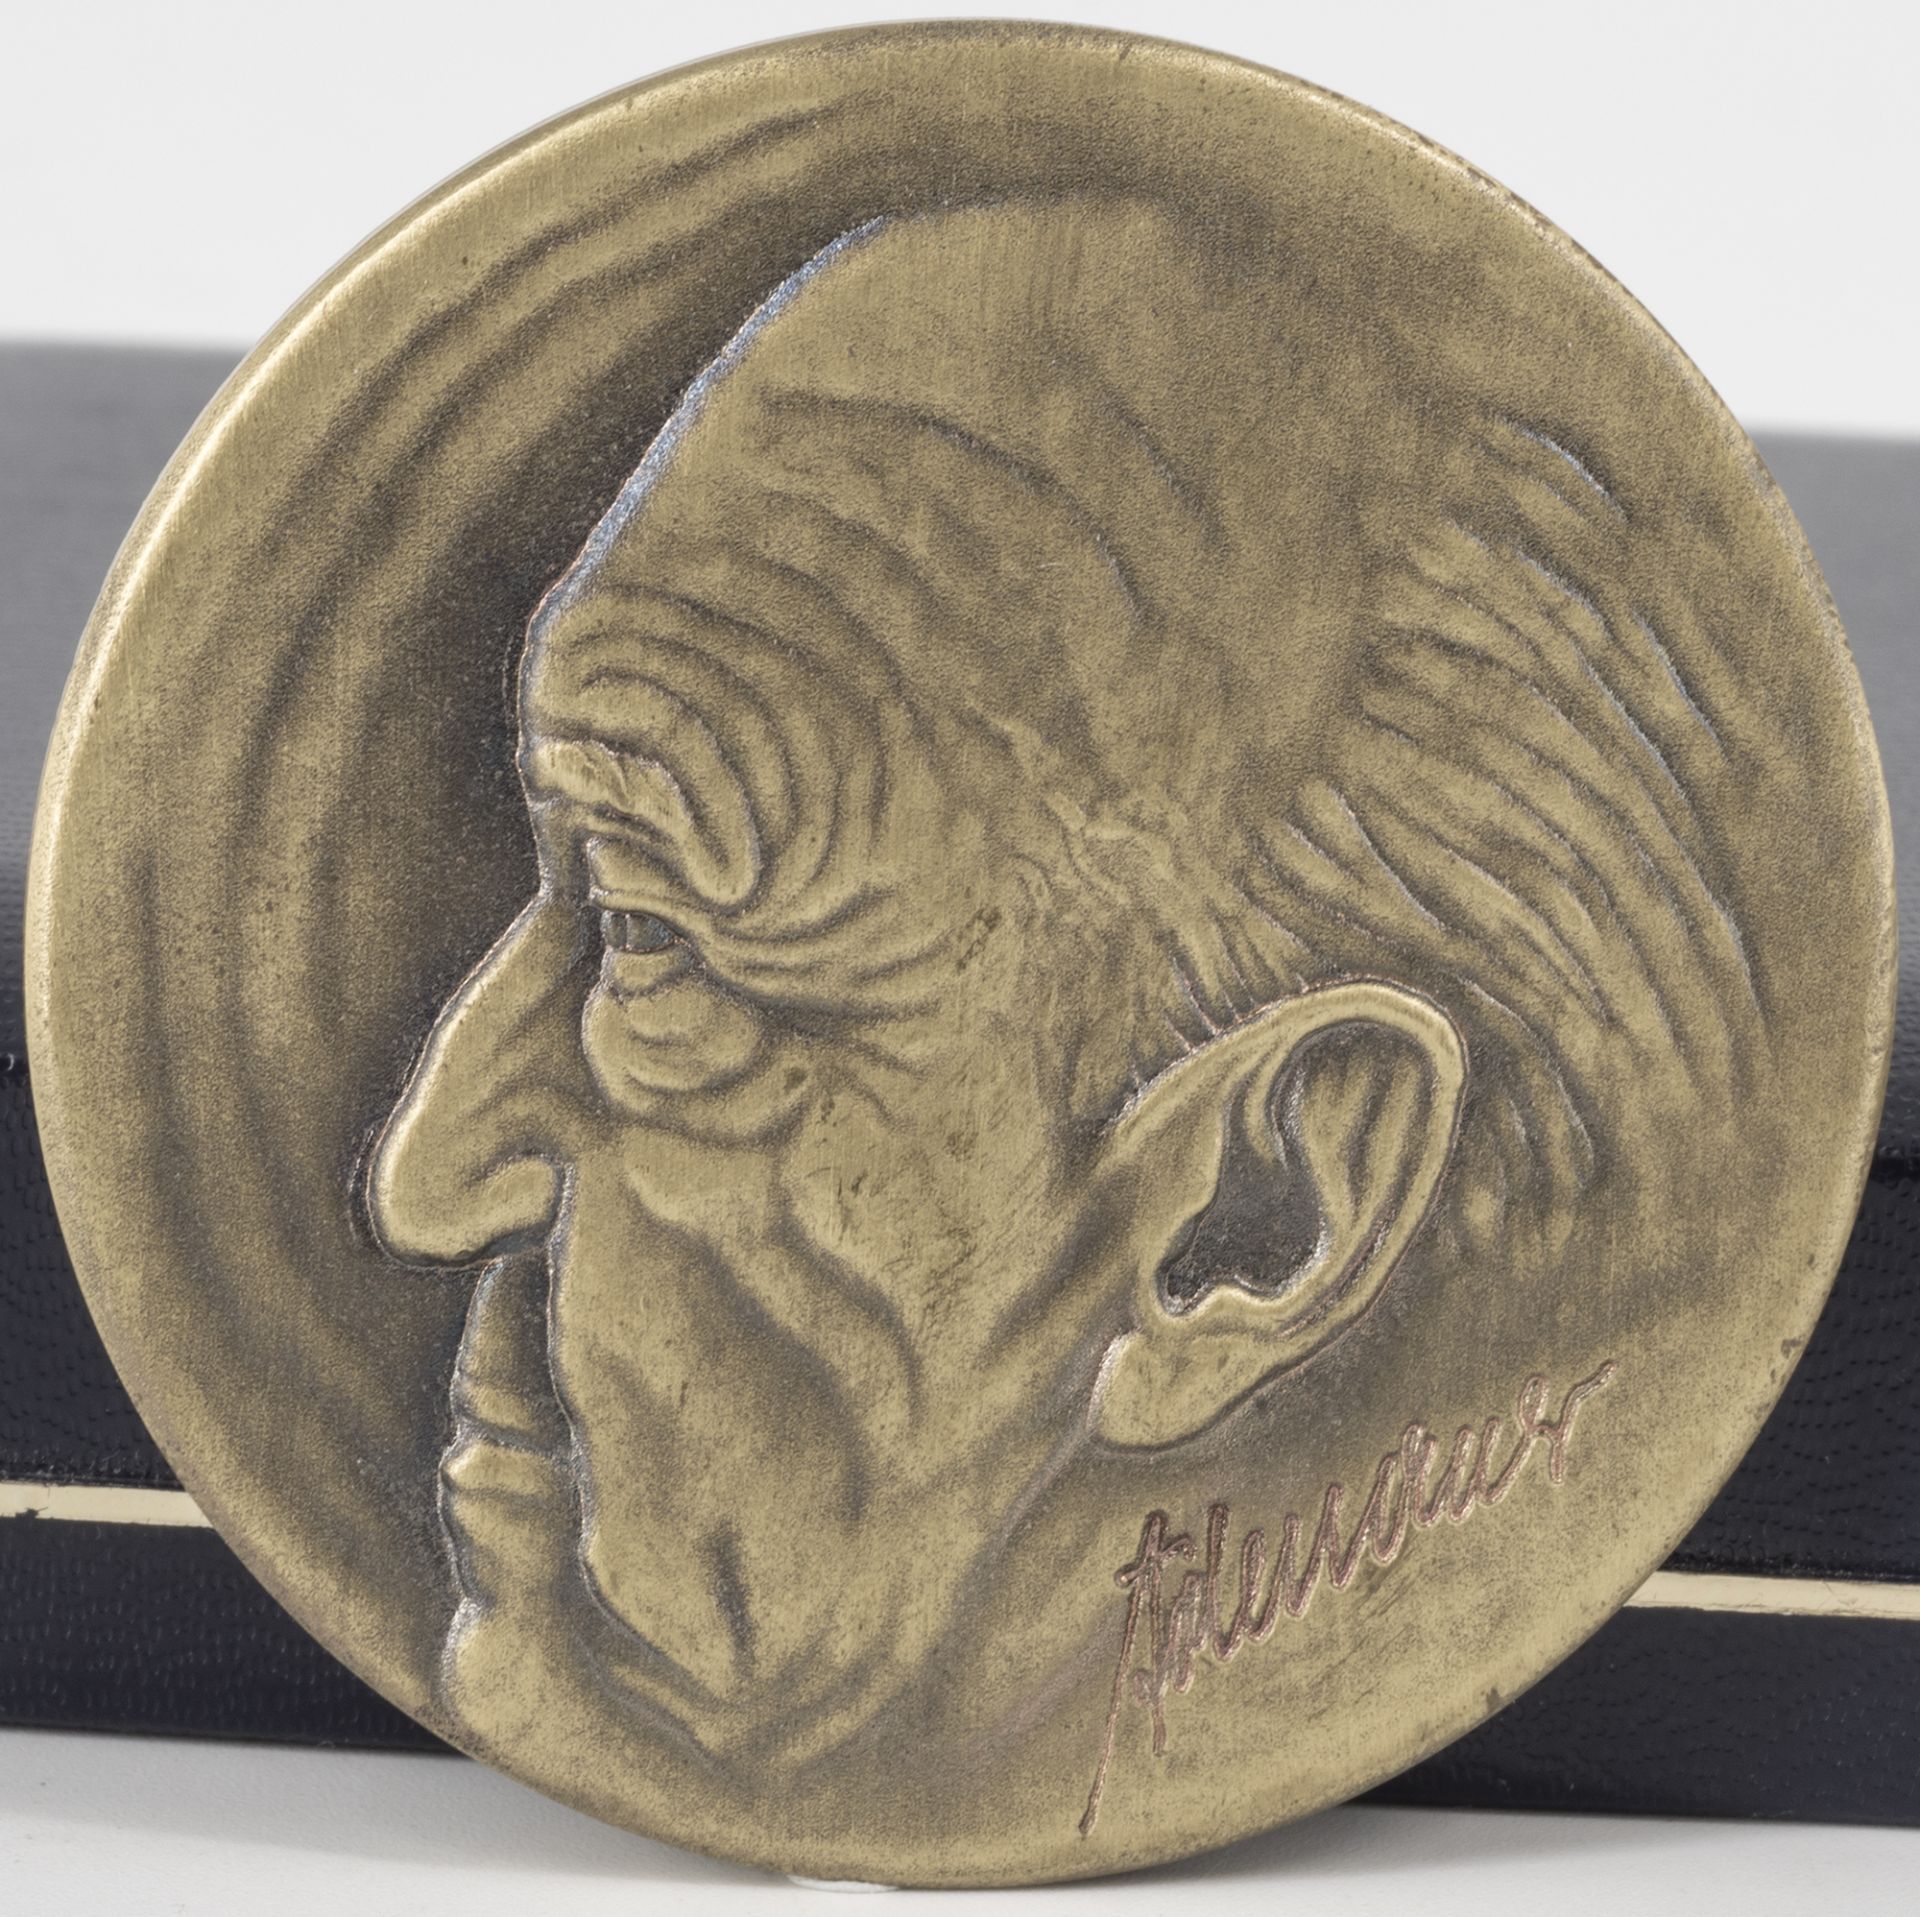 Medaille Adenauer und Kohl, Reliefdarstellung, Durchmesser: ca. 49,7 mm. Gewicht: ca. 45 g. - Bild 2 aus 2